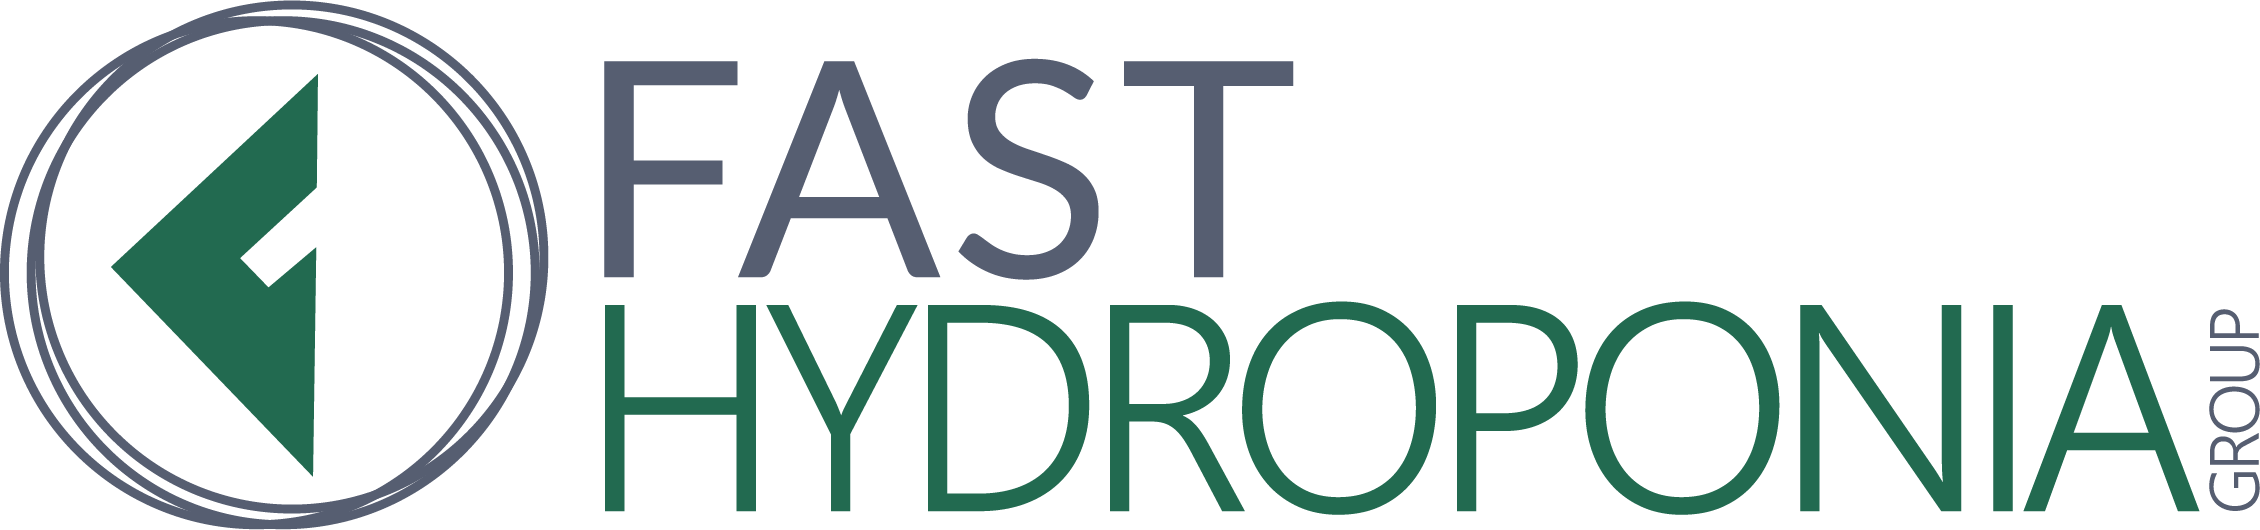 Fast Hydroponia Website Logo